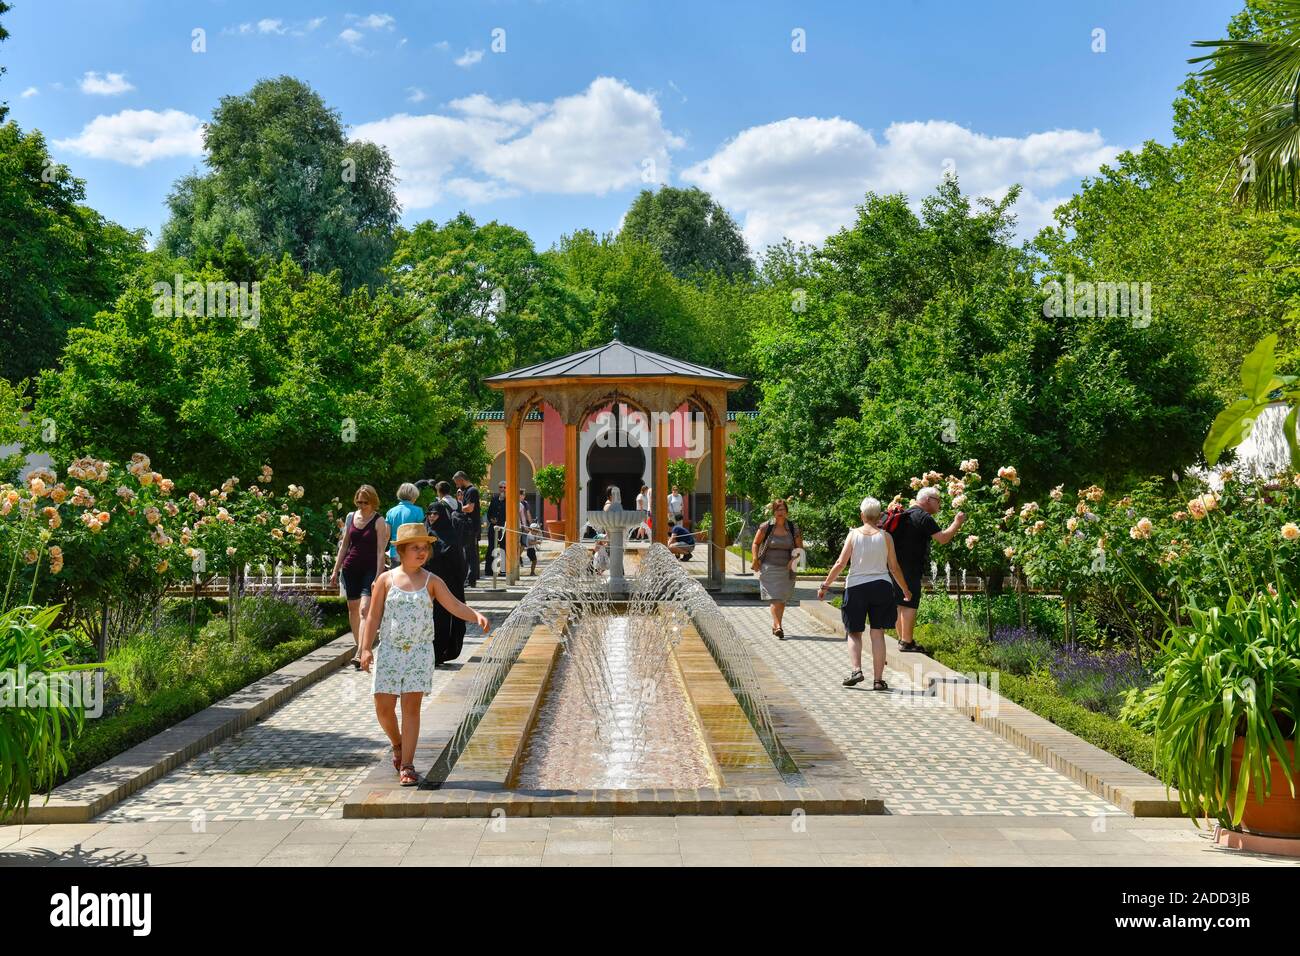 Orientalischer Garten, Gärten der Welt, Marzahn, Berlin, Deutschland Banque D'Images